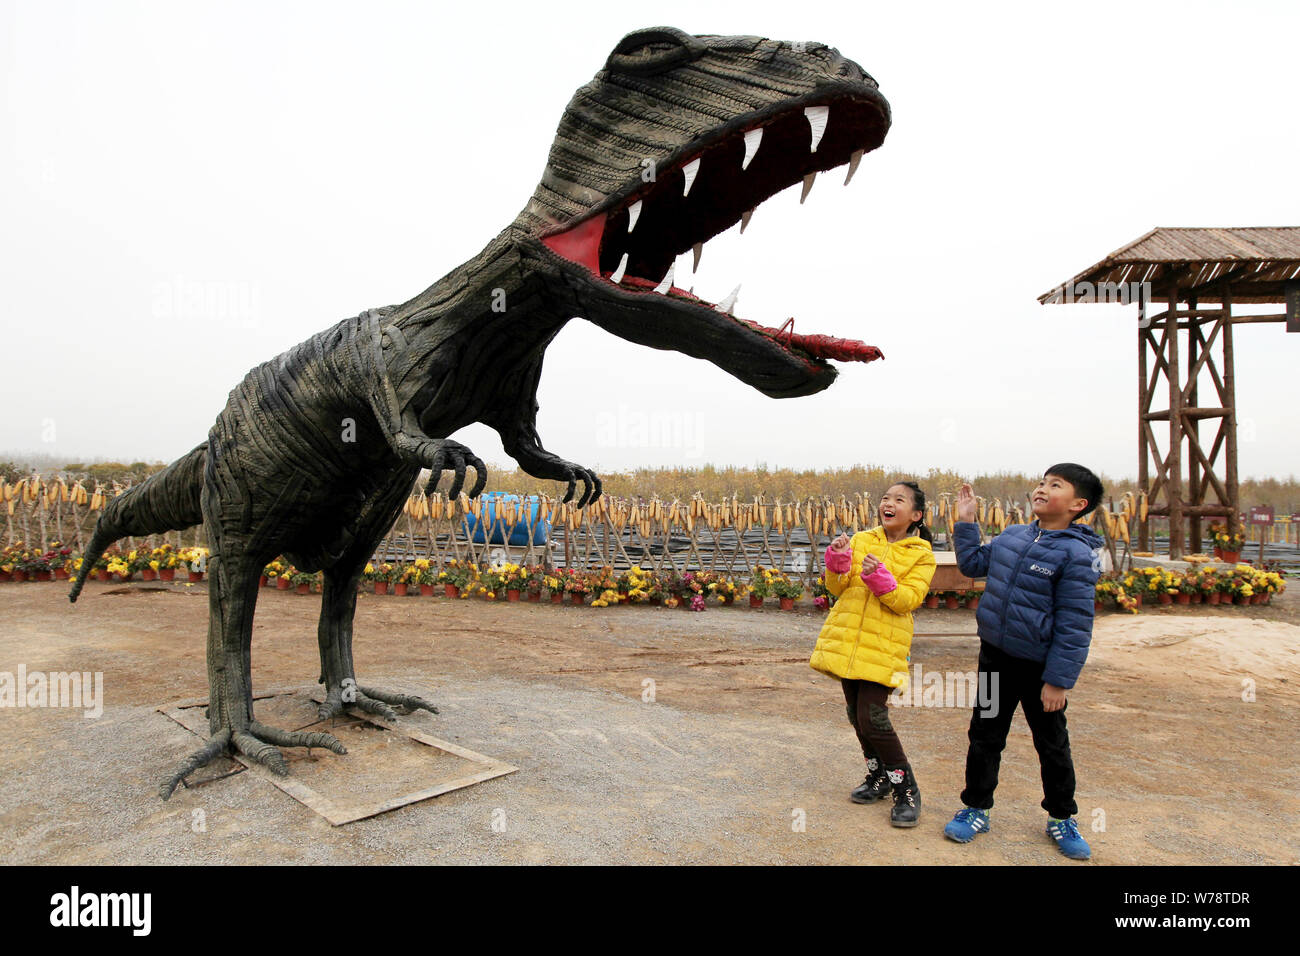 Les visiteurs regarder une sculpture des pneus en forme de tyrannosaure à un parc de sculptures des pneus à Zaozhuang City, Shandong province de Chine orientale, le 19 novembre 2017. Banque D'Images